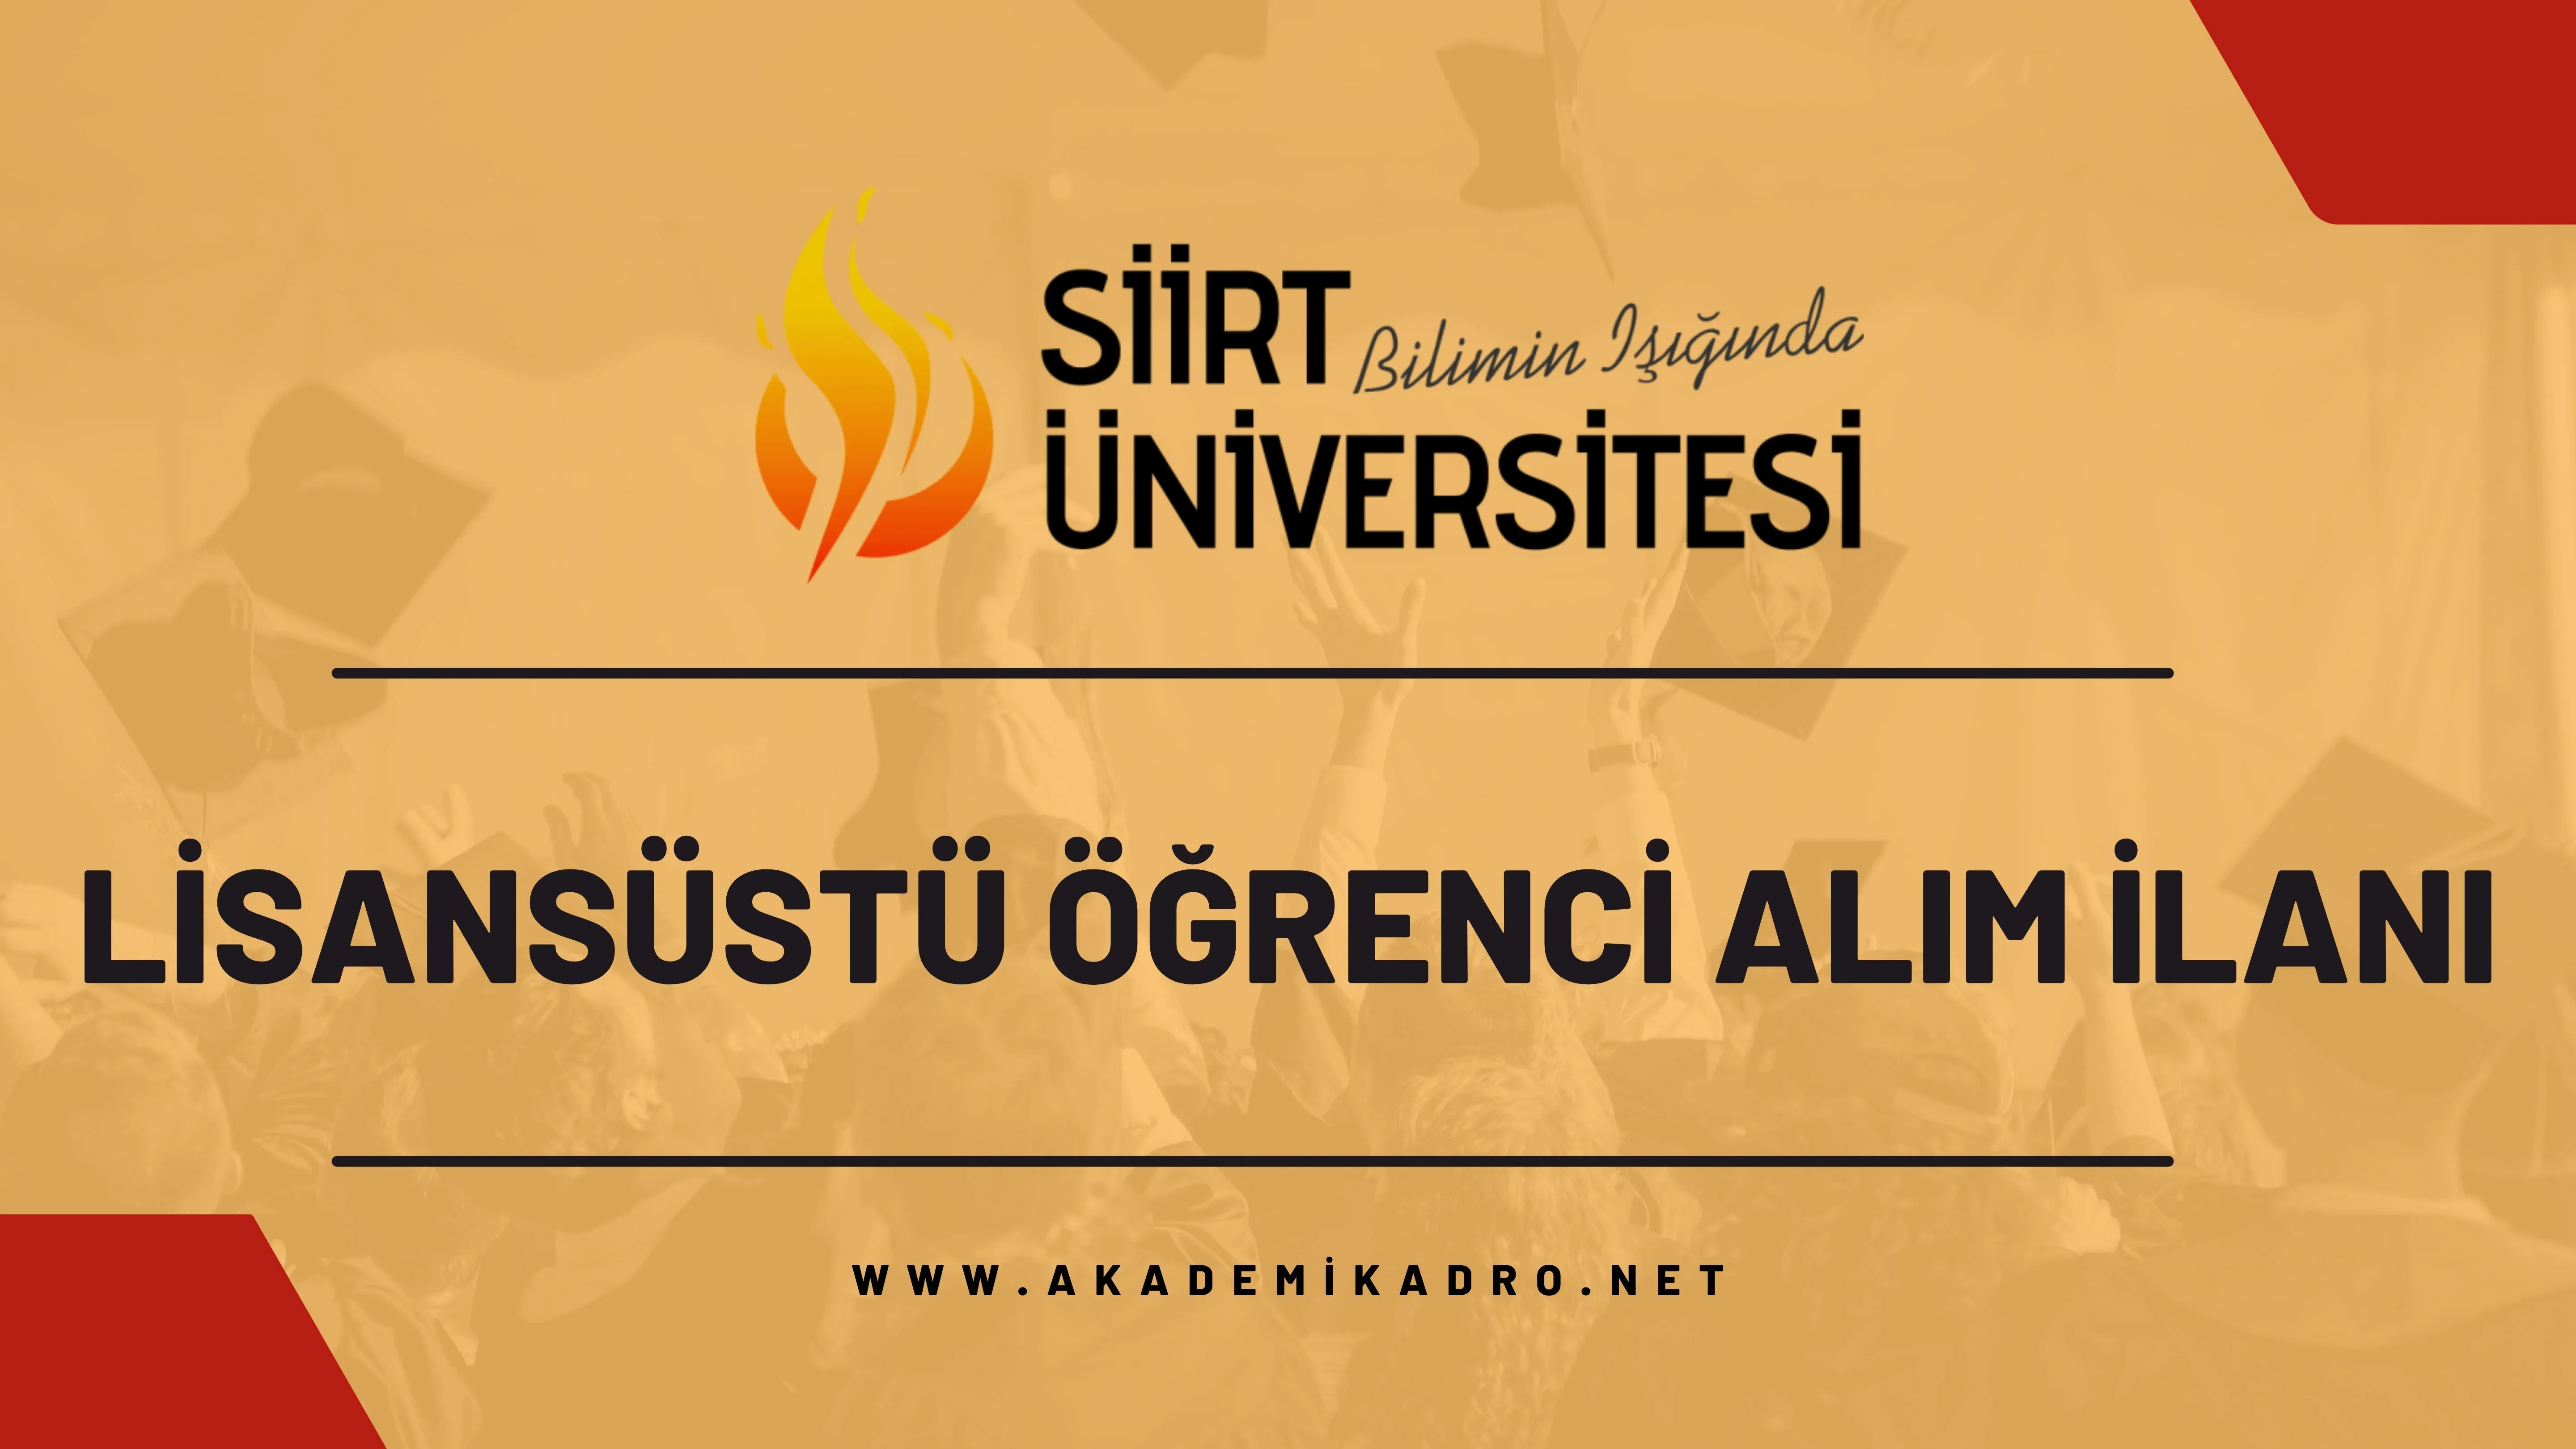 Siirt Üniversitesi 2023-2024 güz döneminde lisansüstü programlara öğrenci alacaktır.